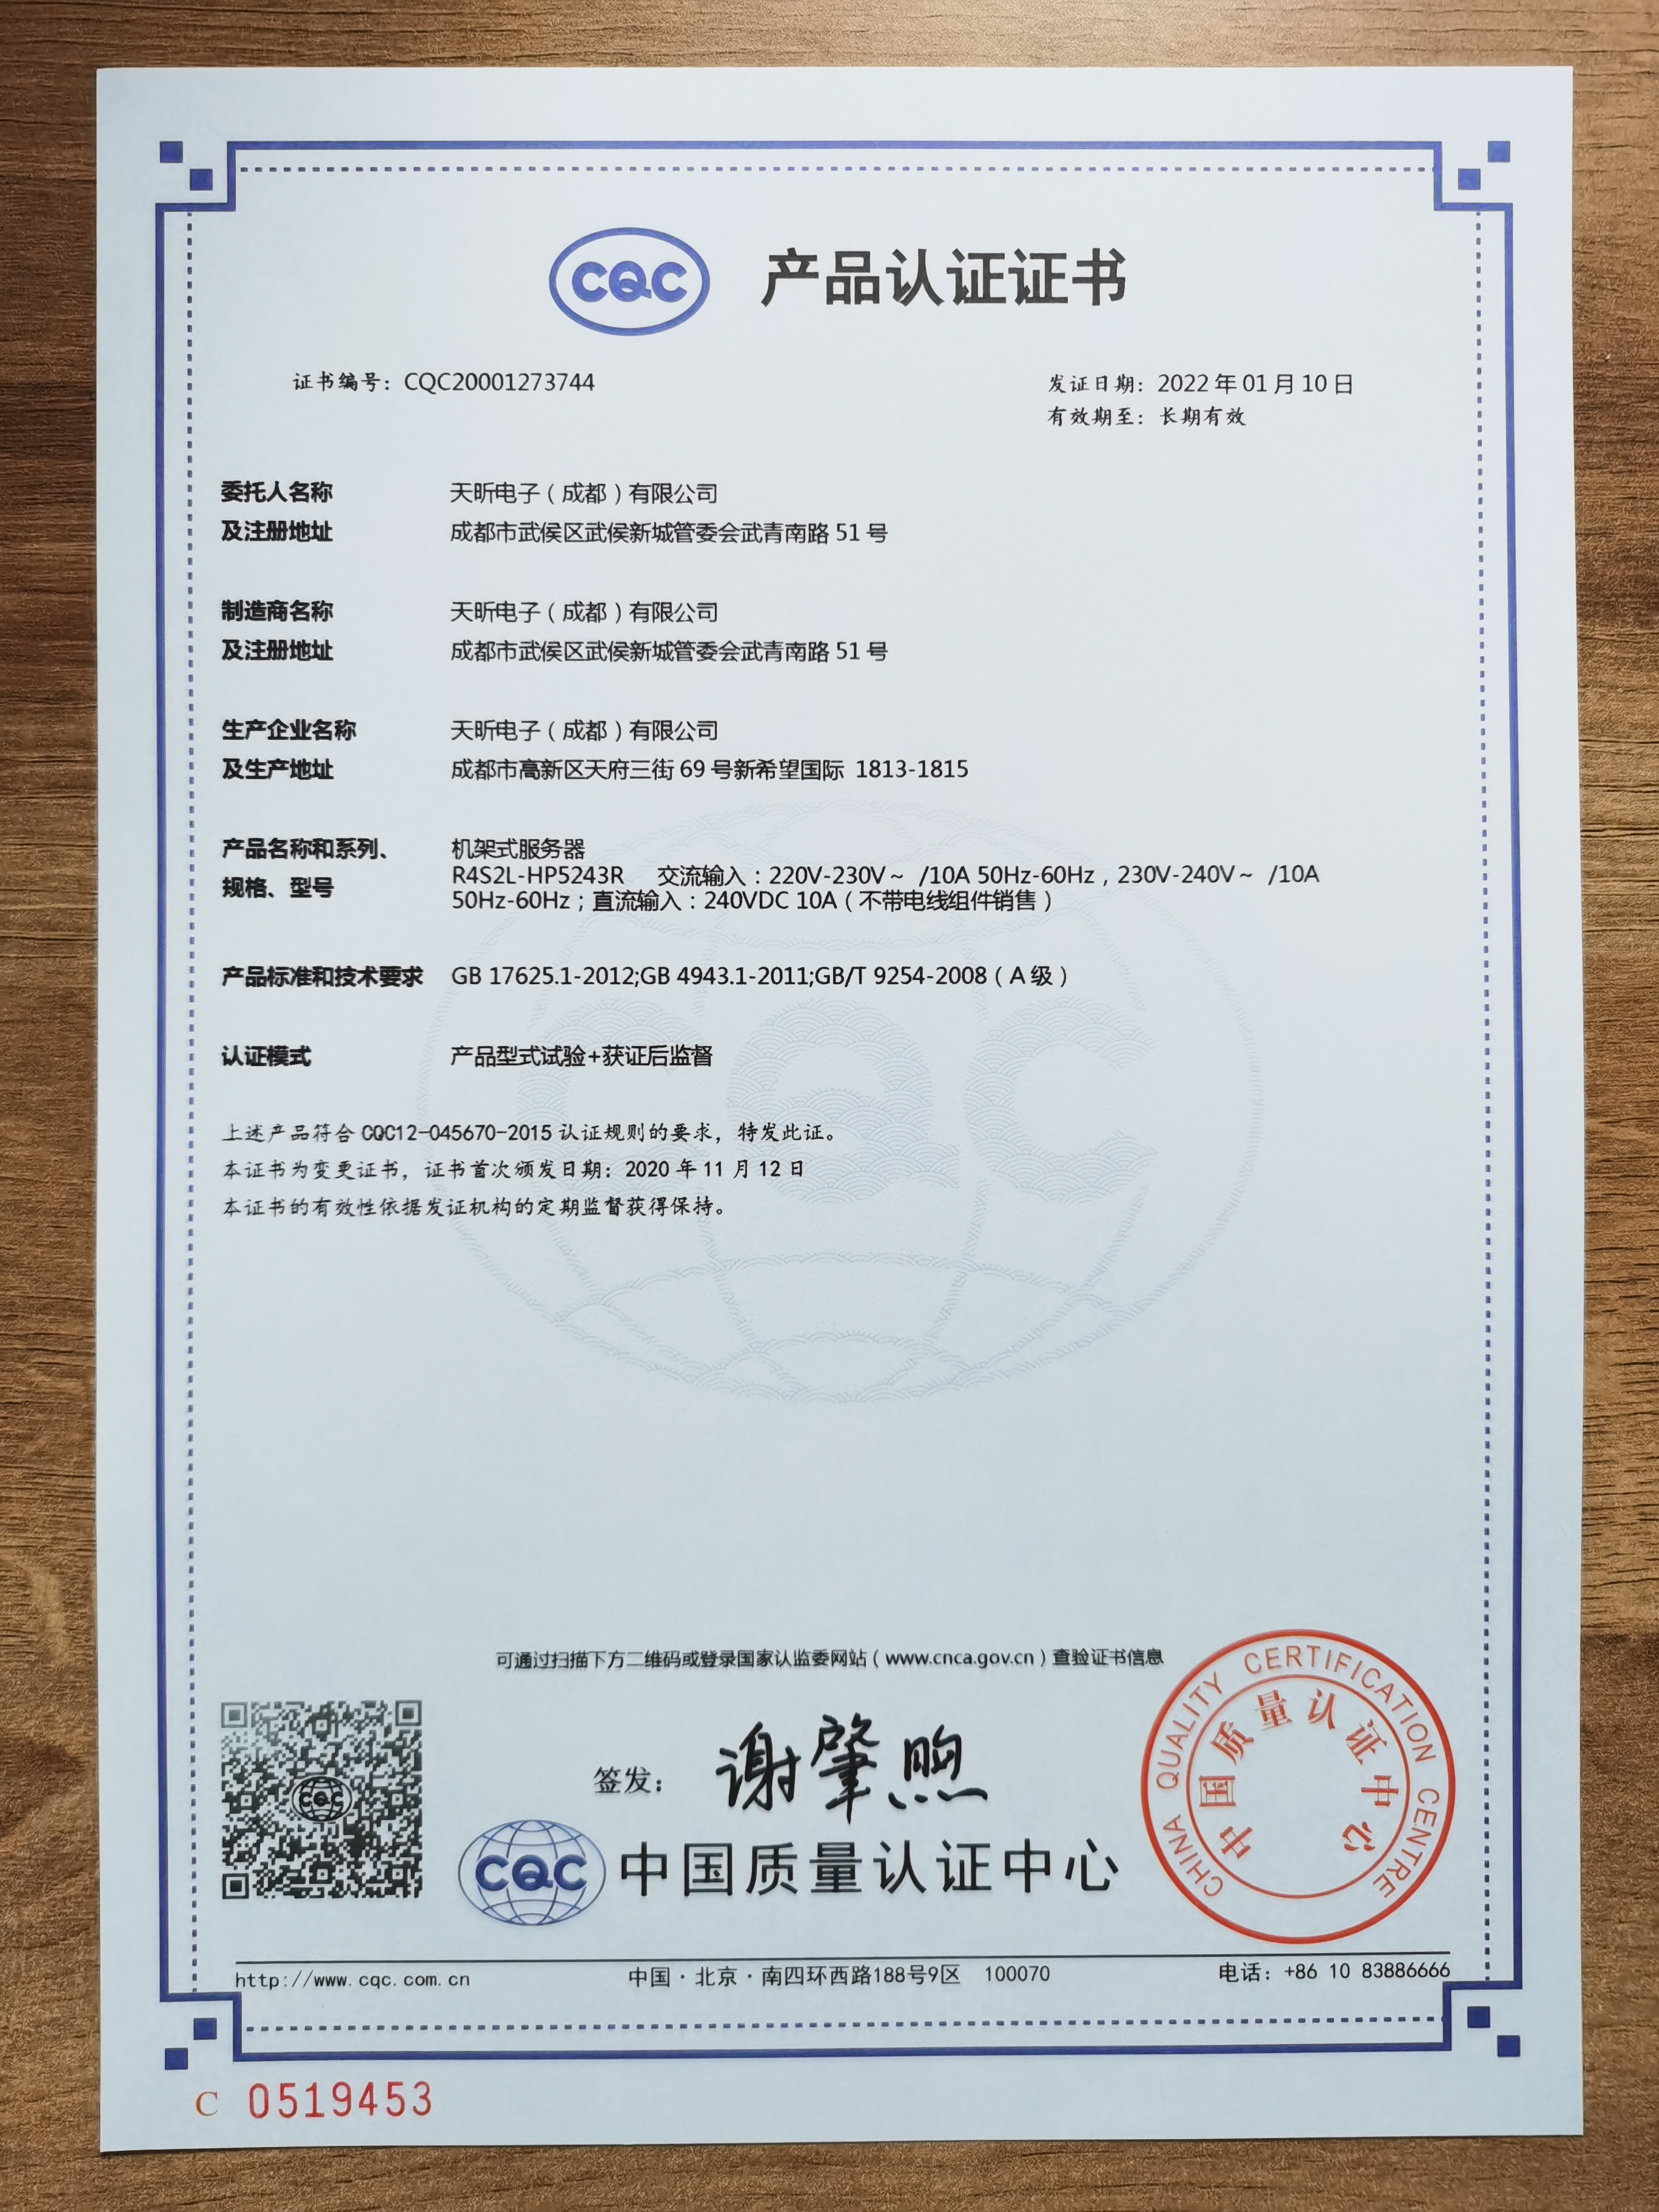 恭喜 天昕电子（成都）有限公司 顺利通过审核获得自愿性CQC产品认证